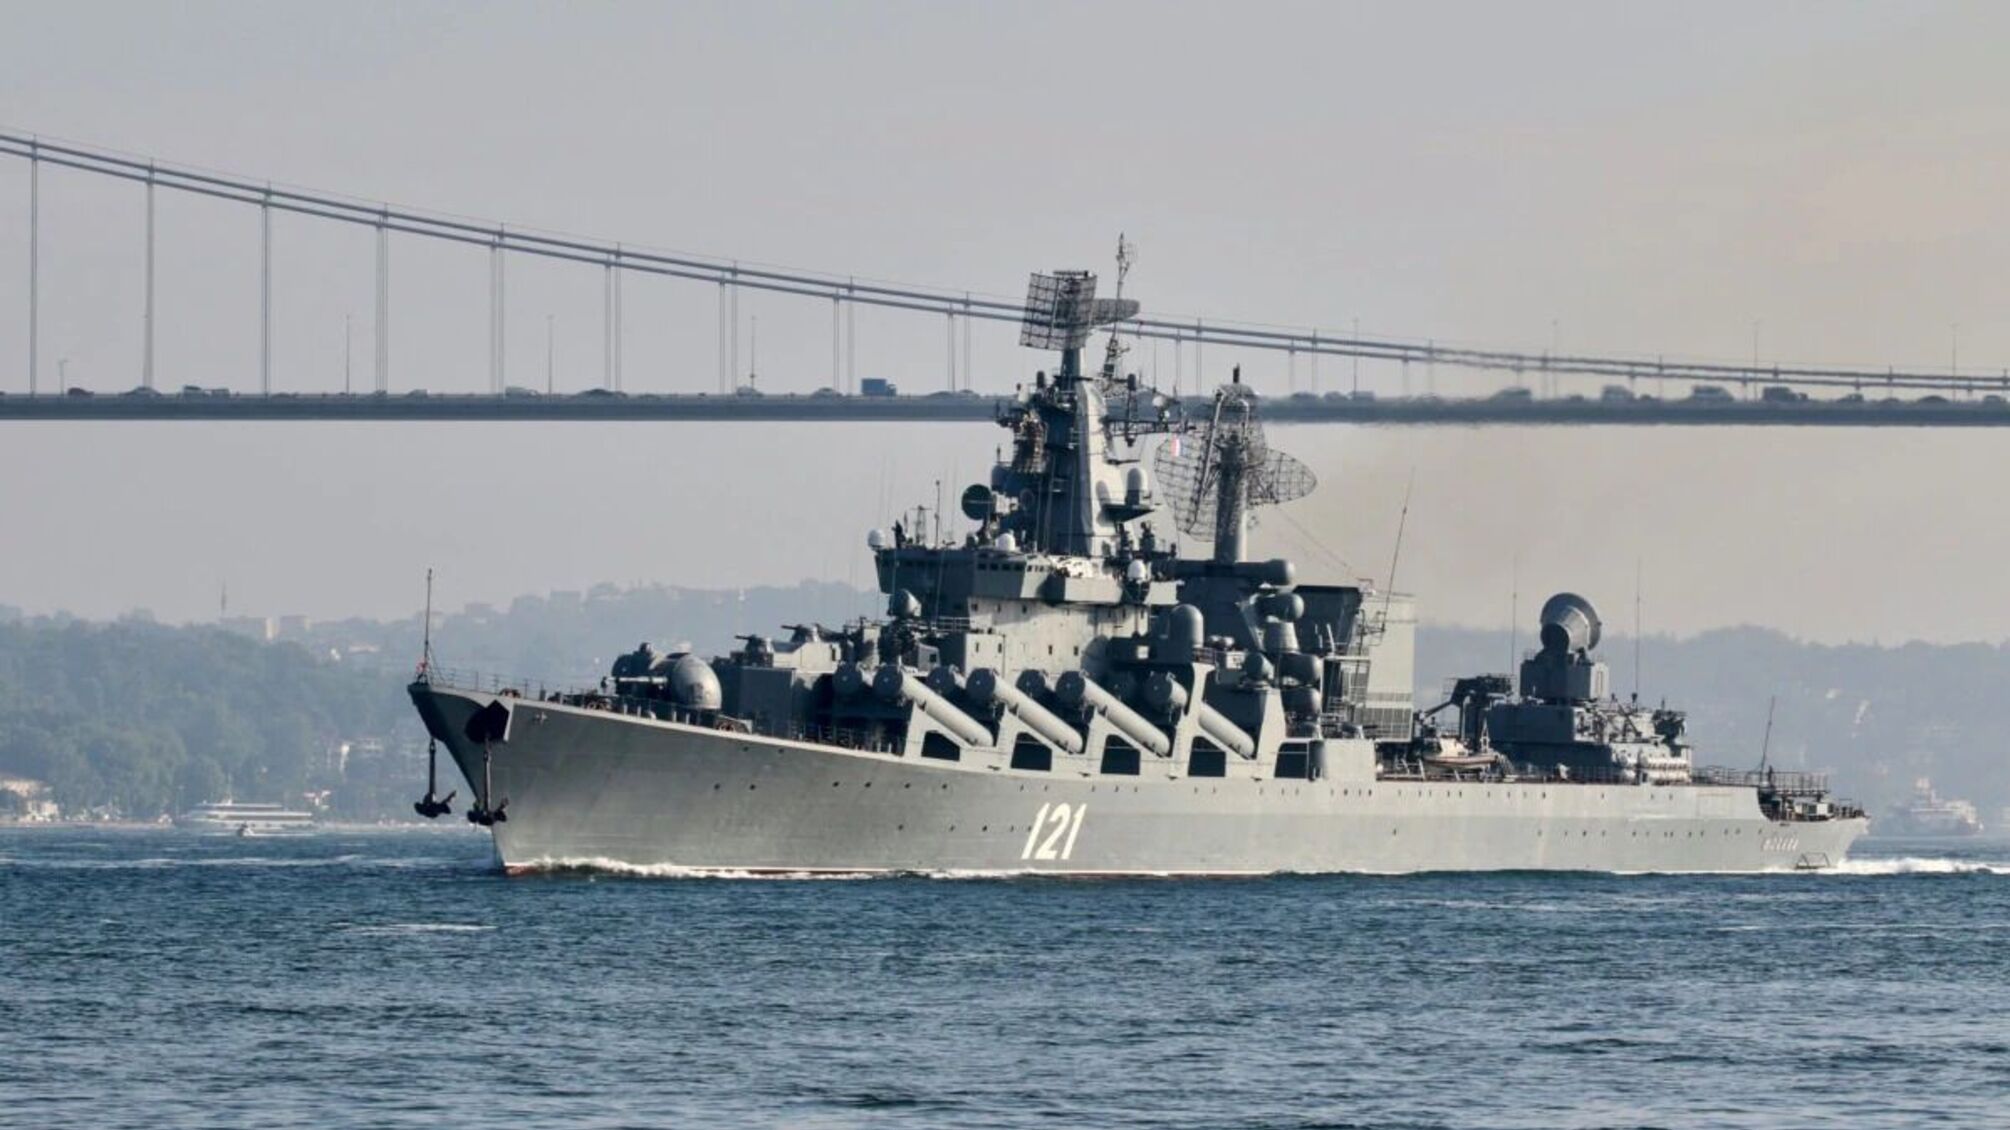 Затонувший крейсер 'Москва' оберегала христианская реликвия за 40 млн долларов, – российский журналист